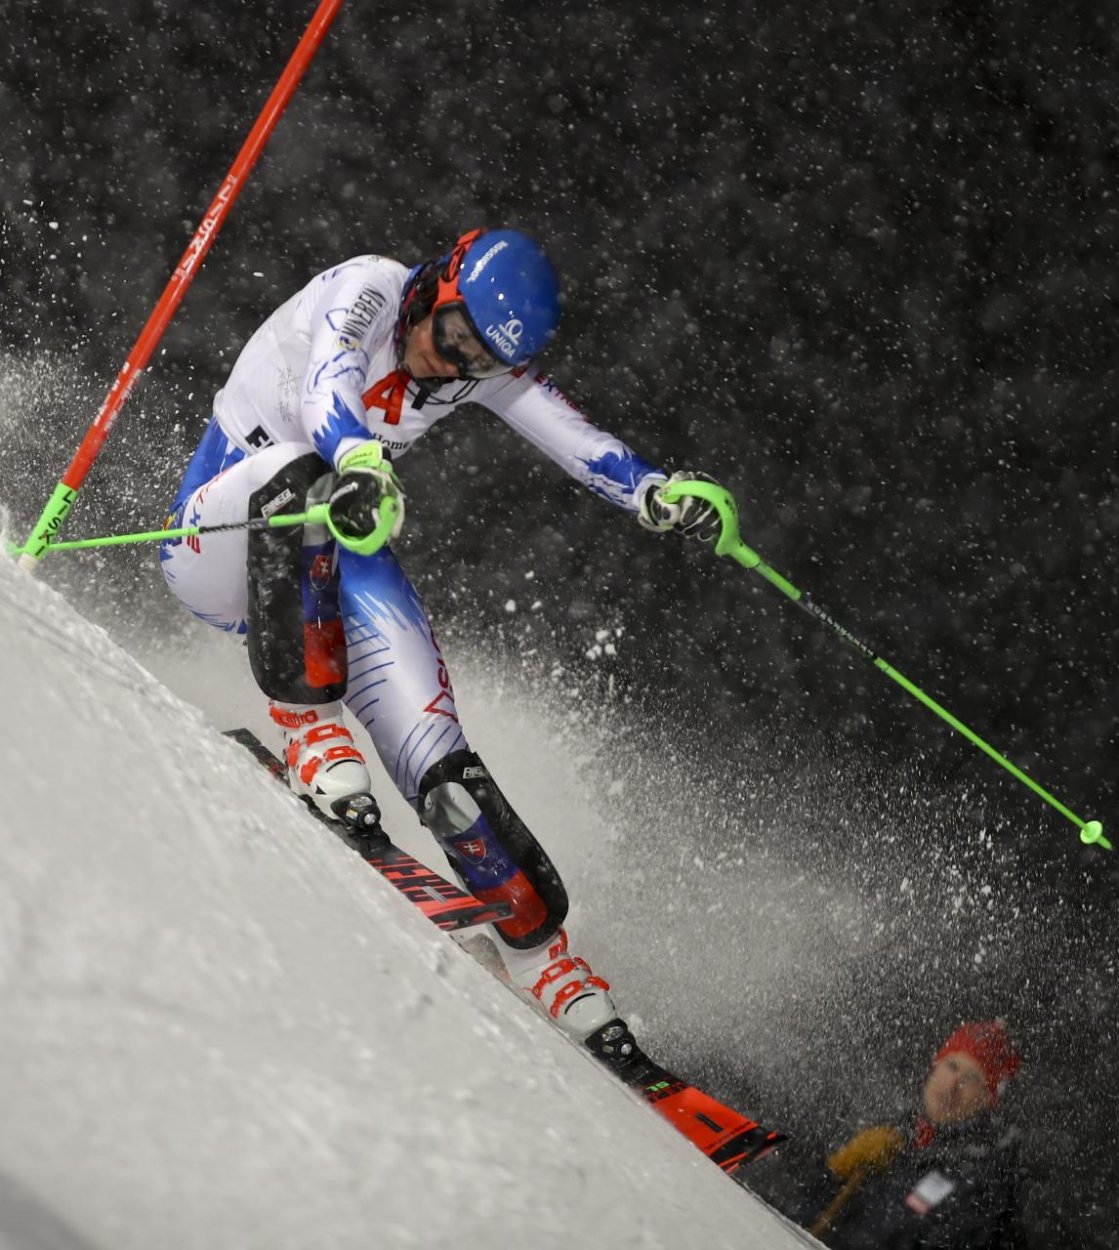 Vlhová vyhrala slalom Svetového pohára v rakúskom Flachau